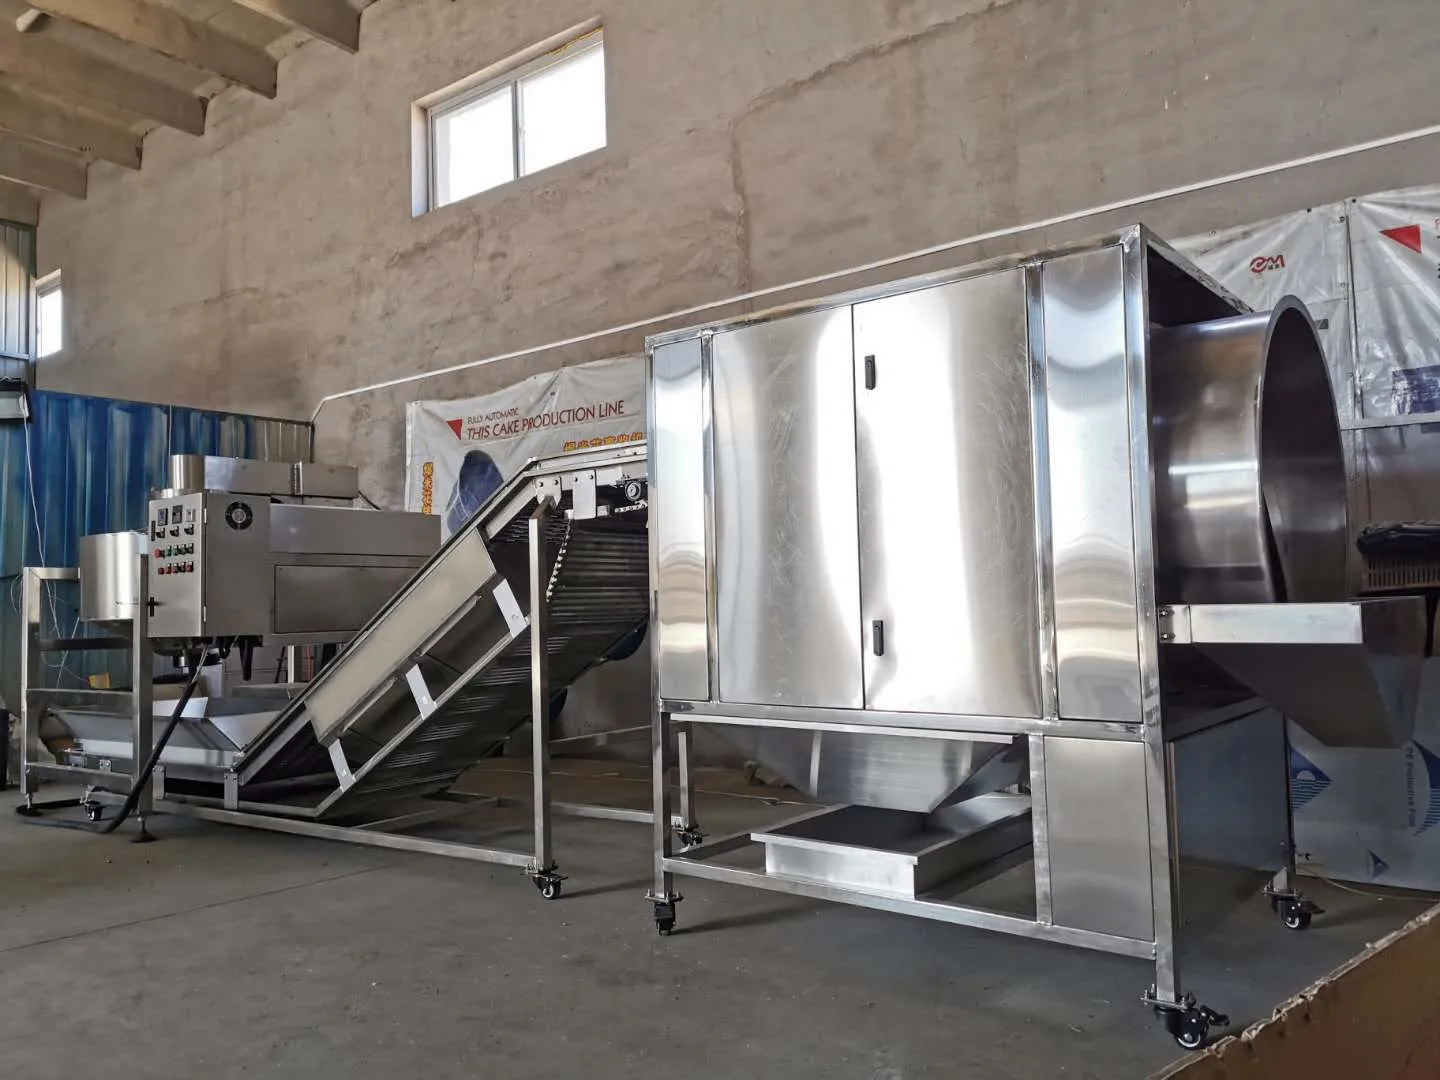 
China Automatic Caramel Popcorn Making Machinery Production Line 